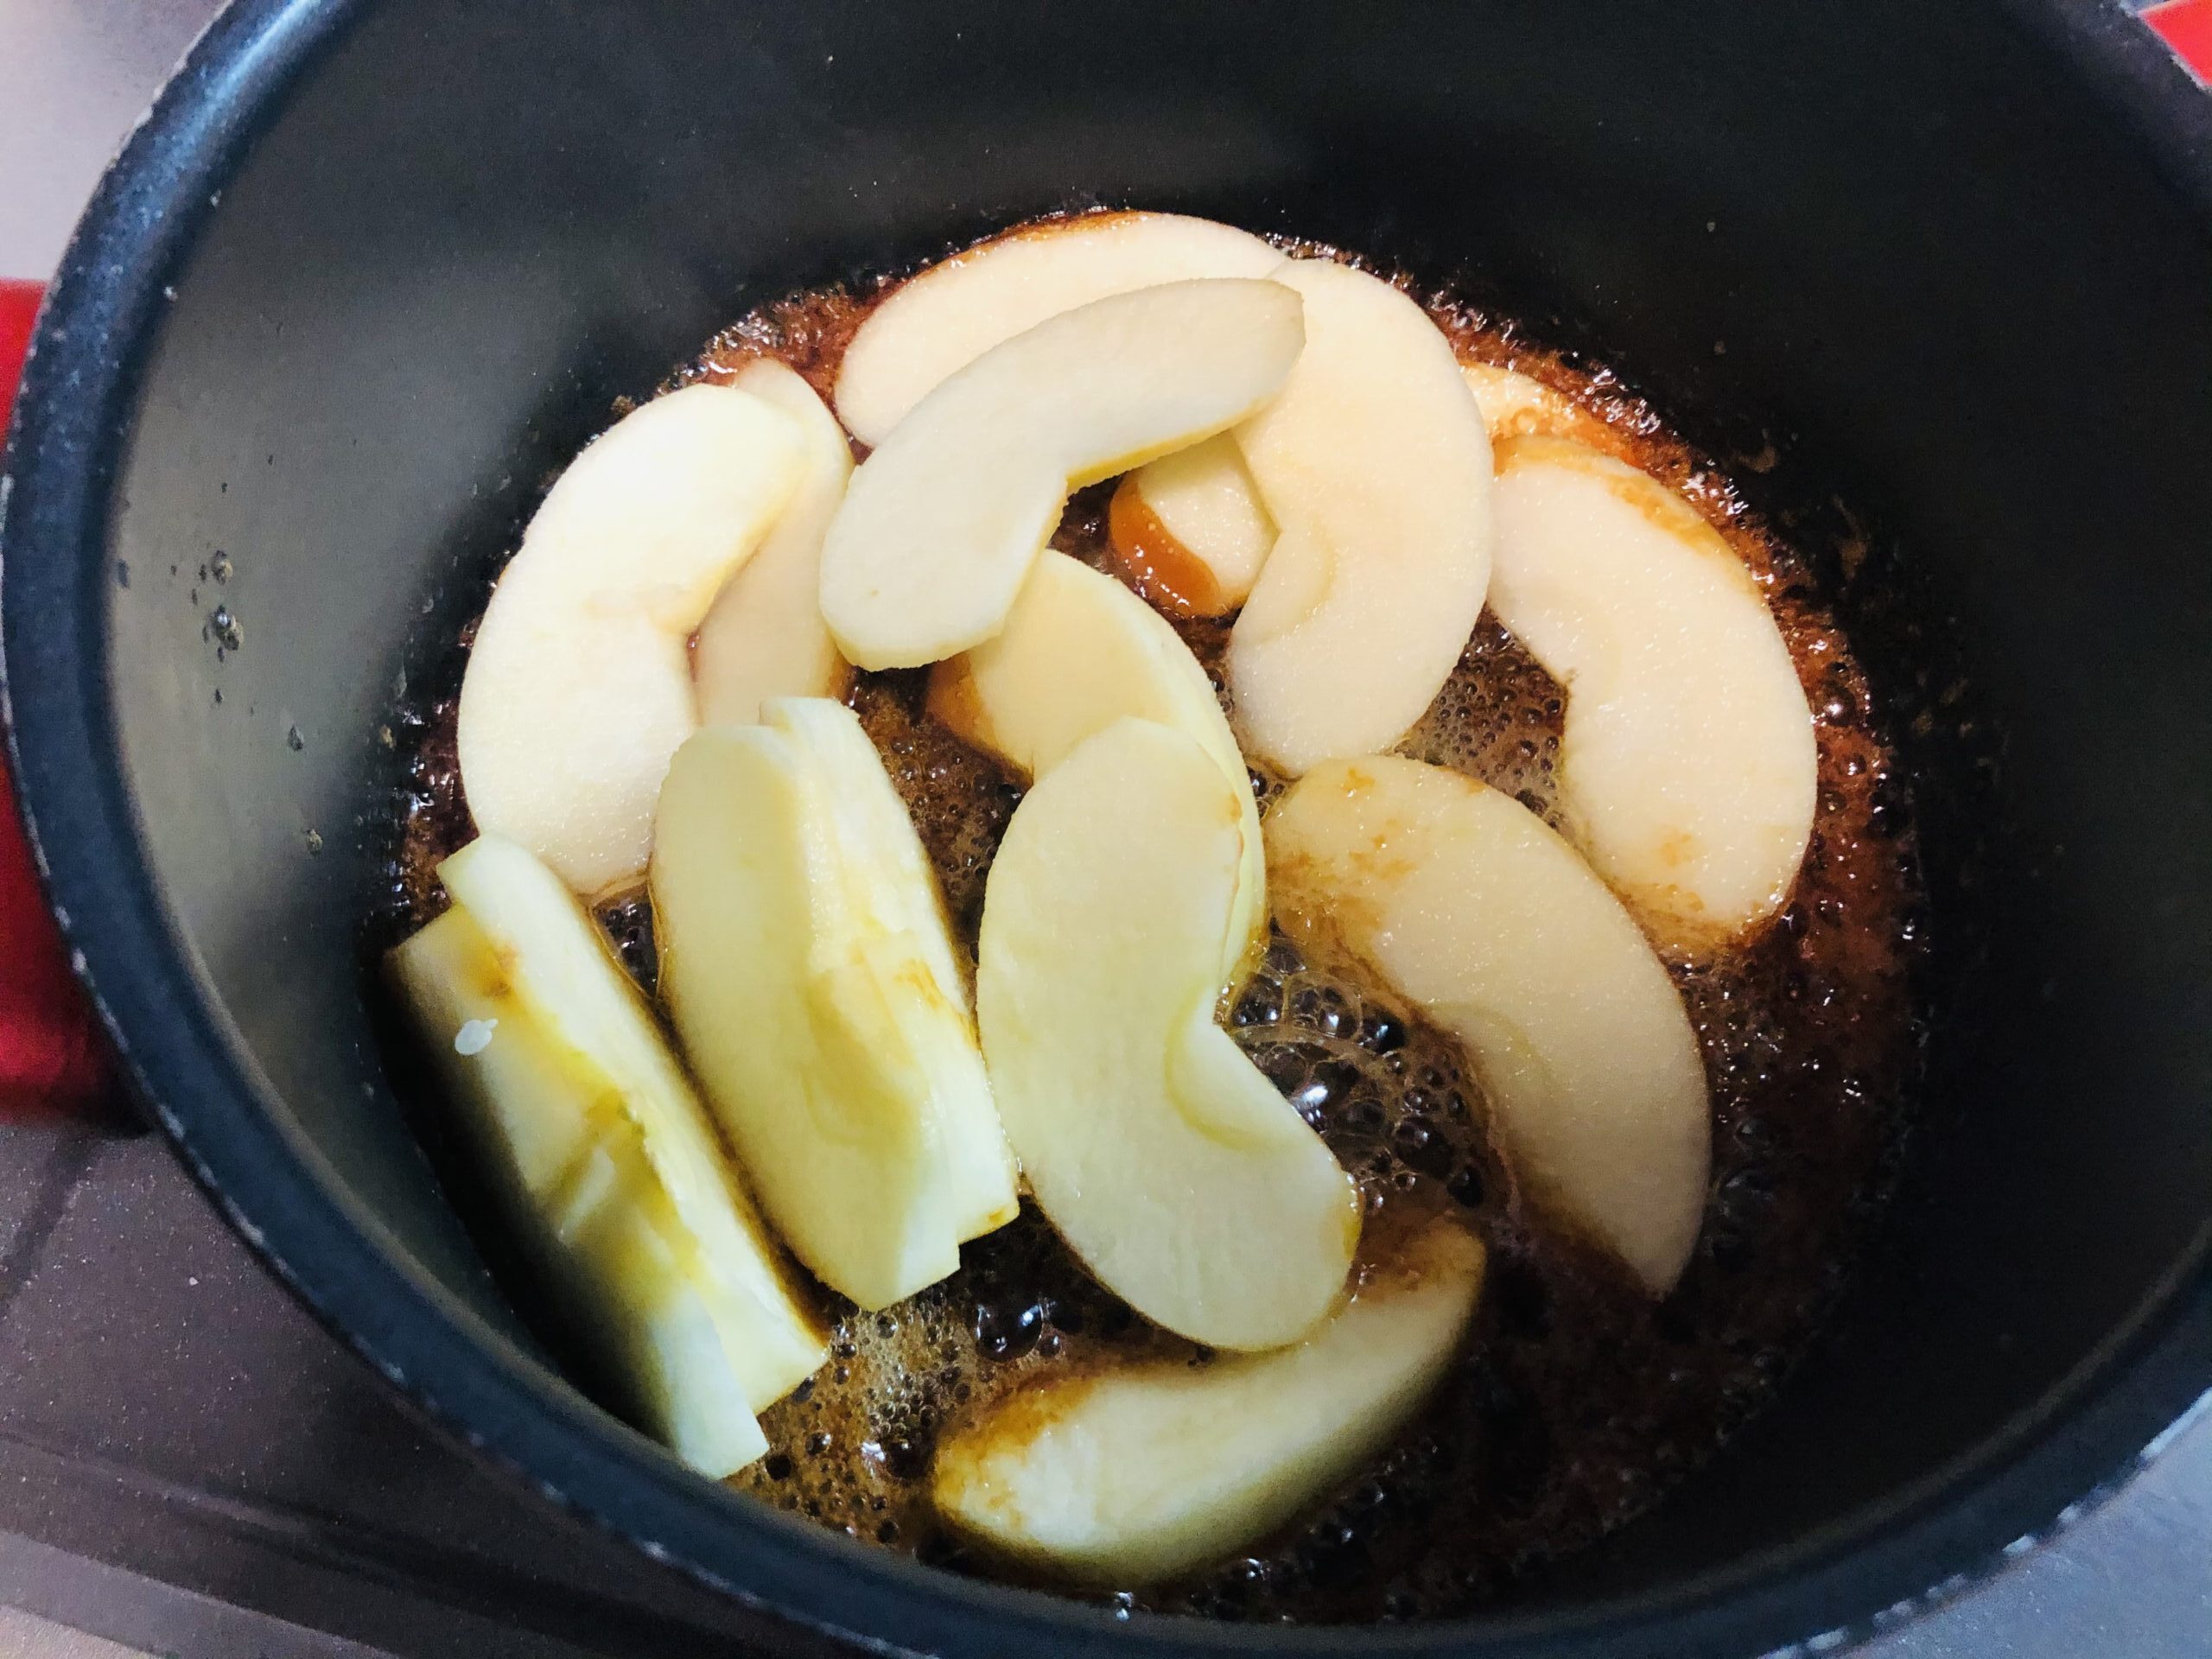 キャラメル状になった鍋にカットしたリンゴを入れた様子のがぞうです